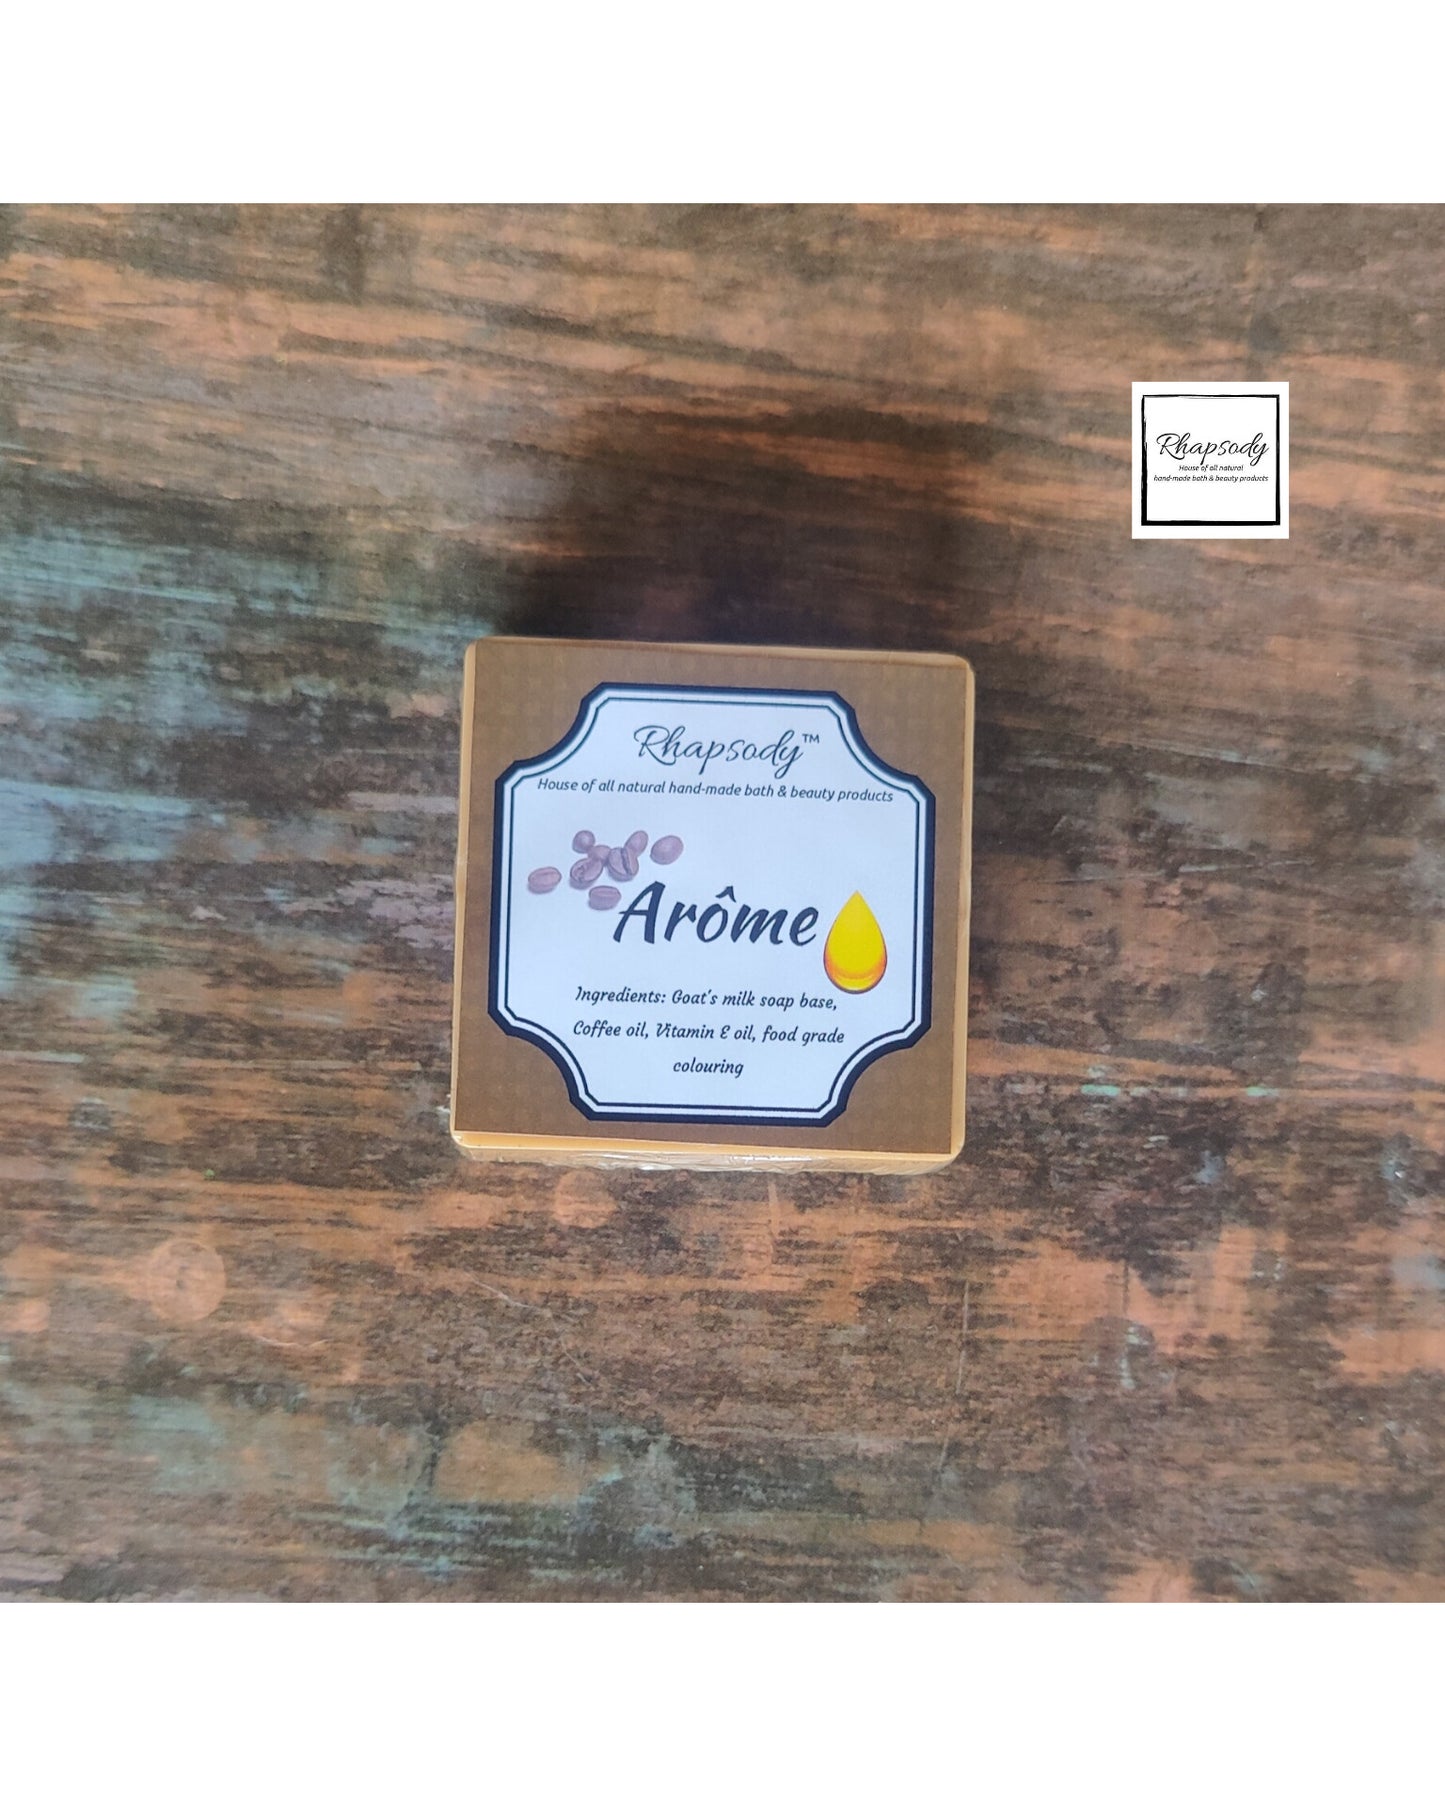 Arome- coffee and vitamin E oil soap